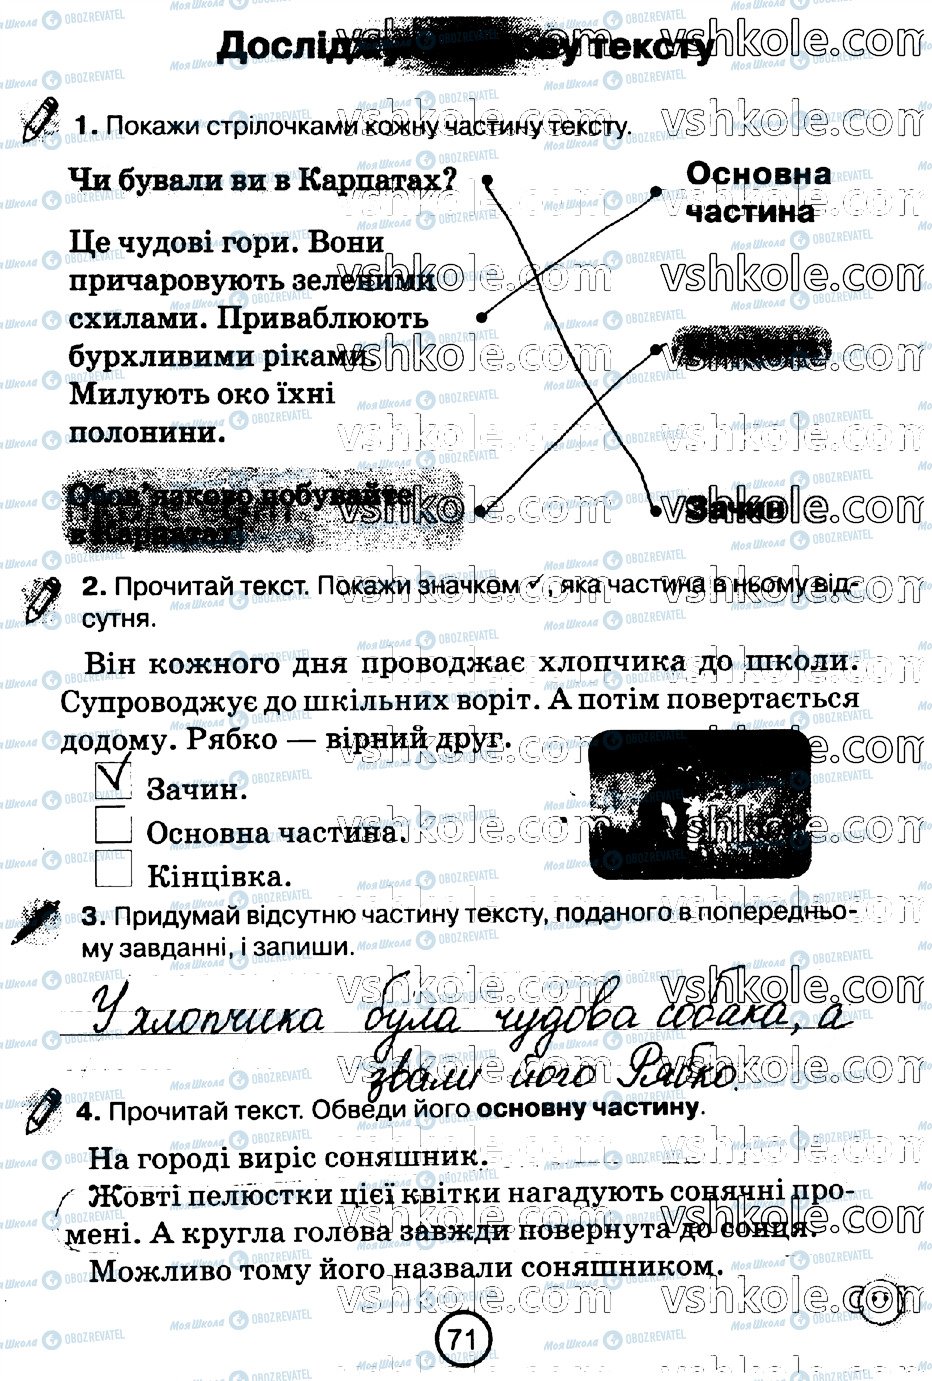 ГДЗ Укр мова 2 класс страница стр71